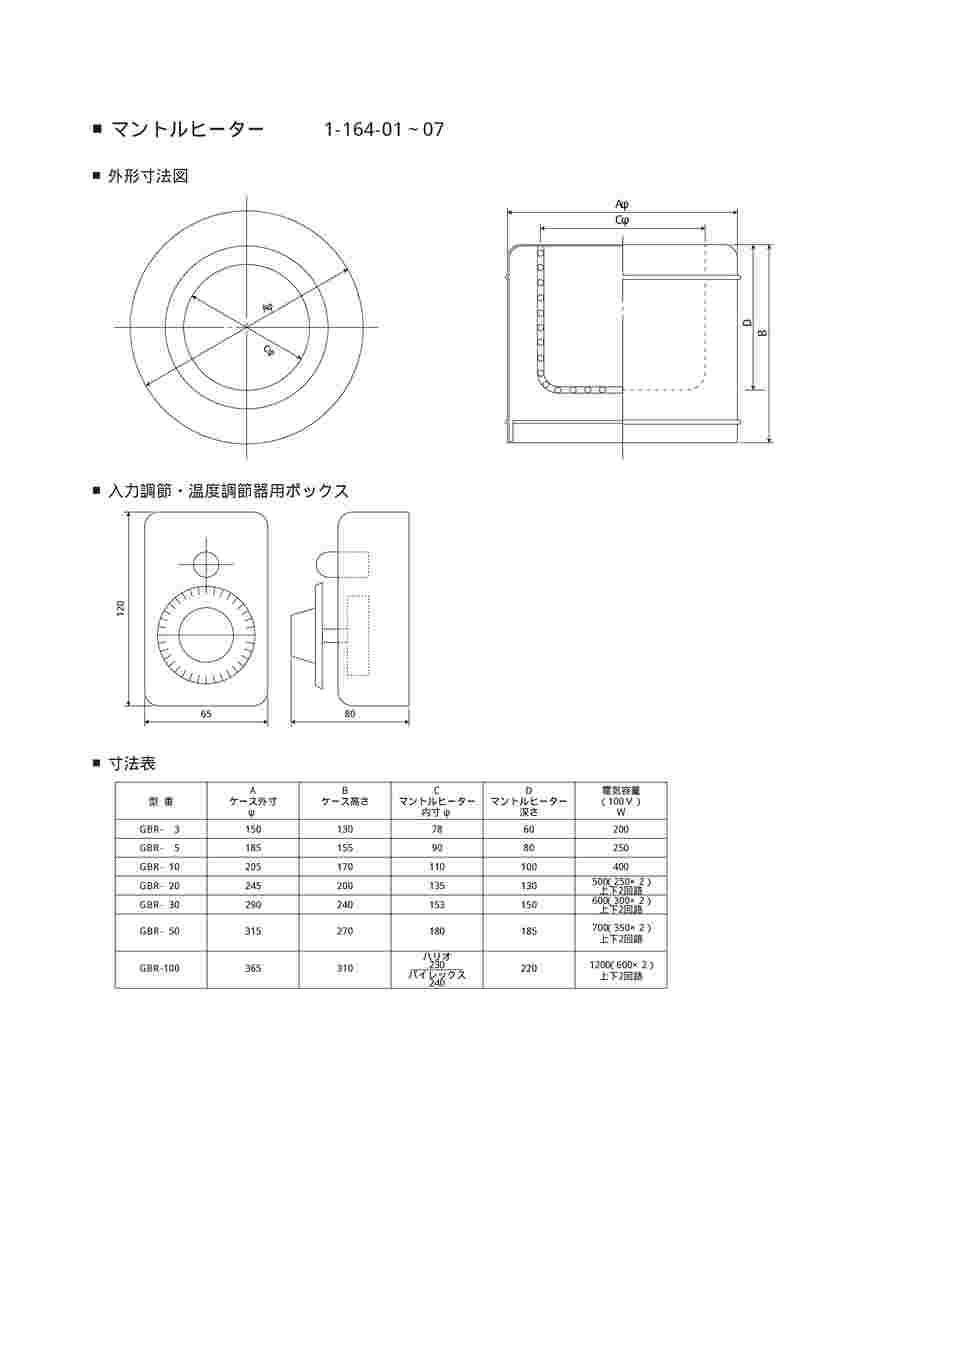 1-164-05 マントルヒーター入力調節器付き(ビーカー用) GBR-30 【AXEL